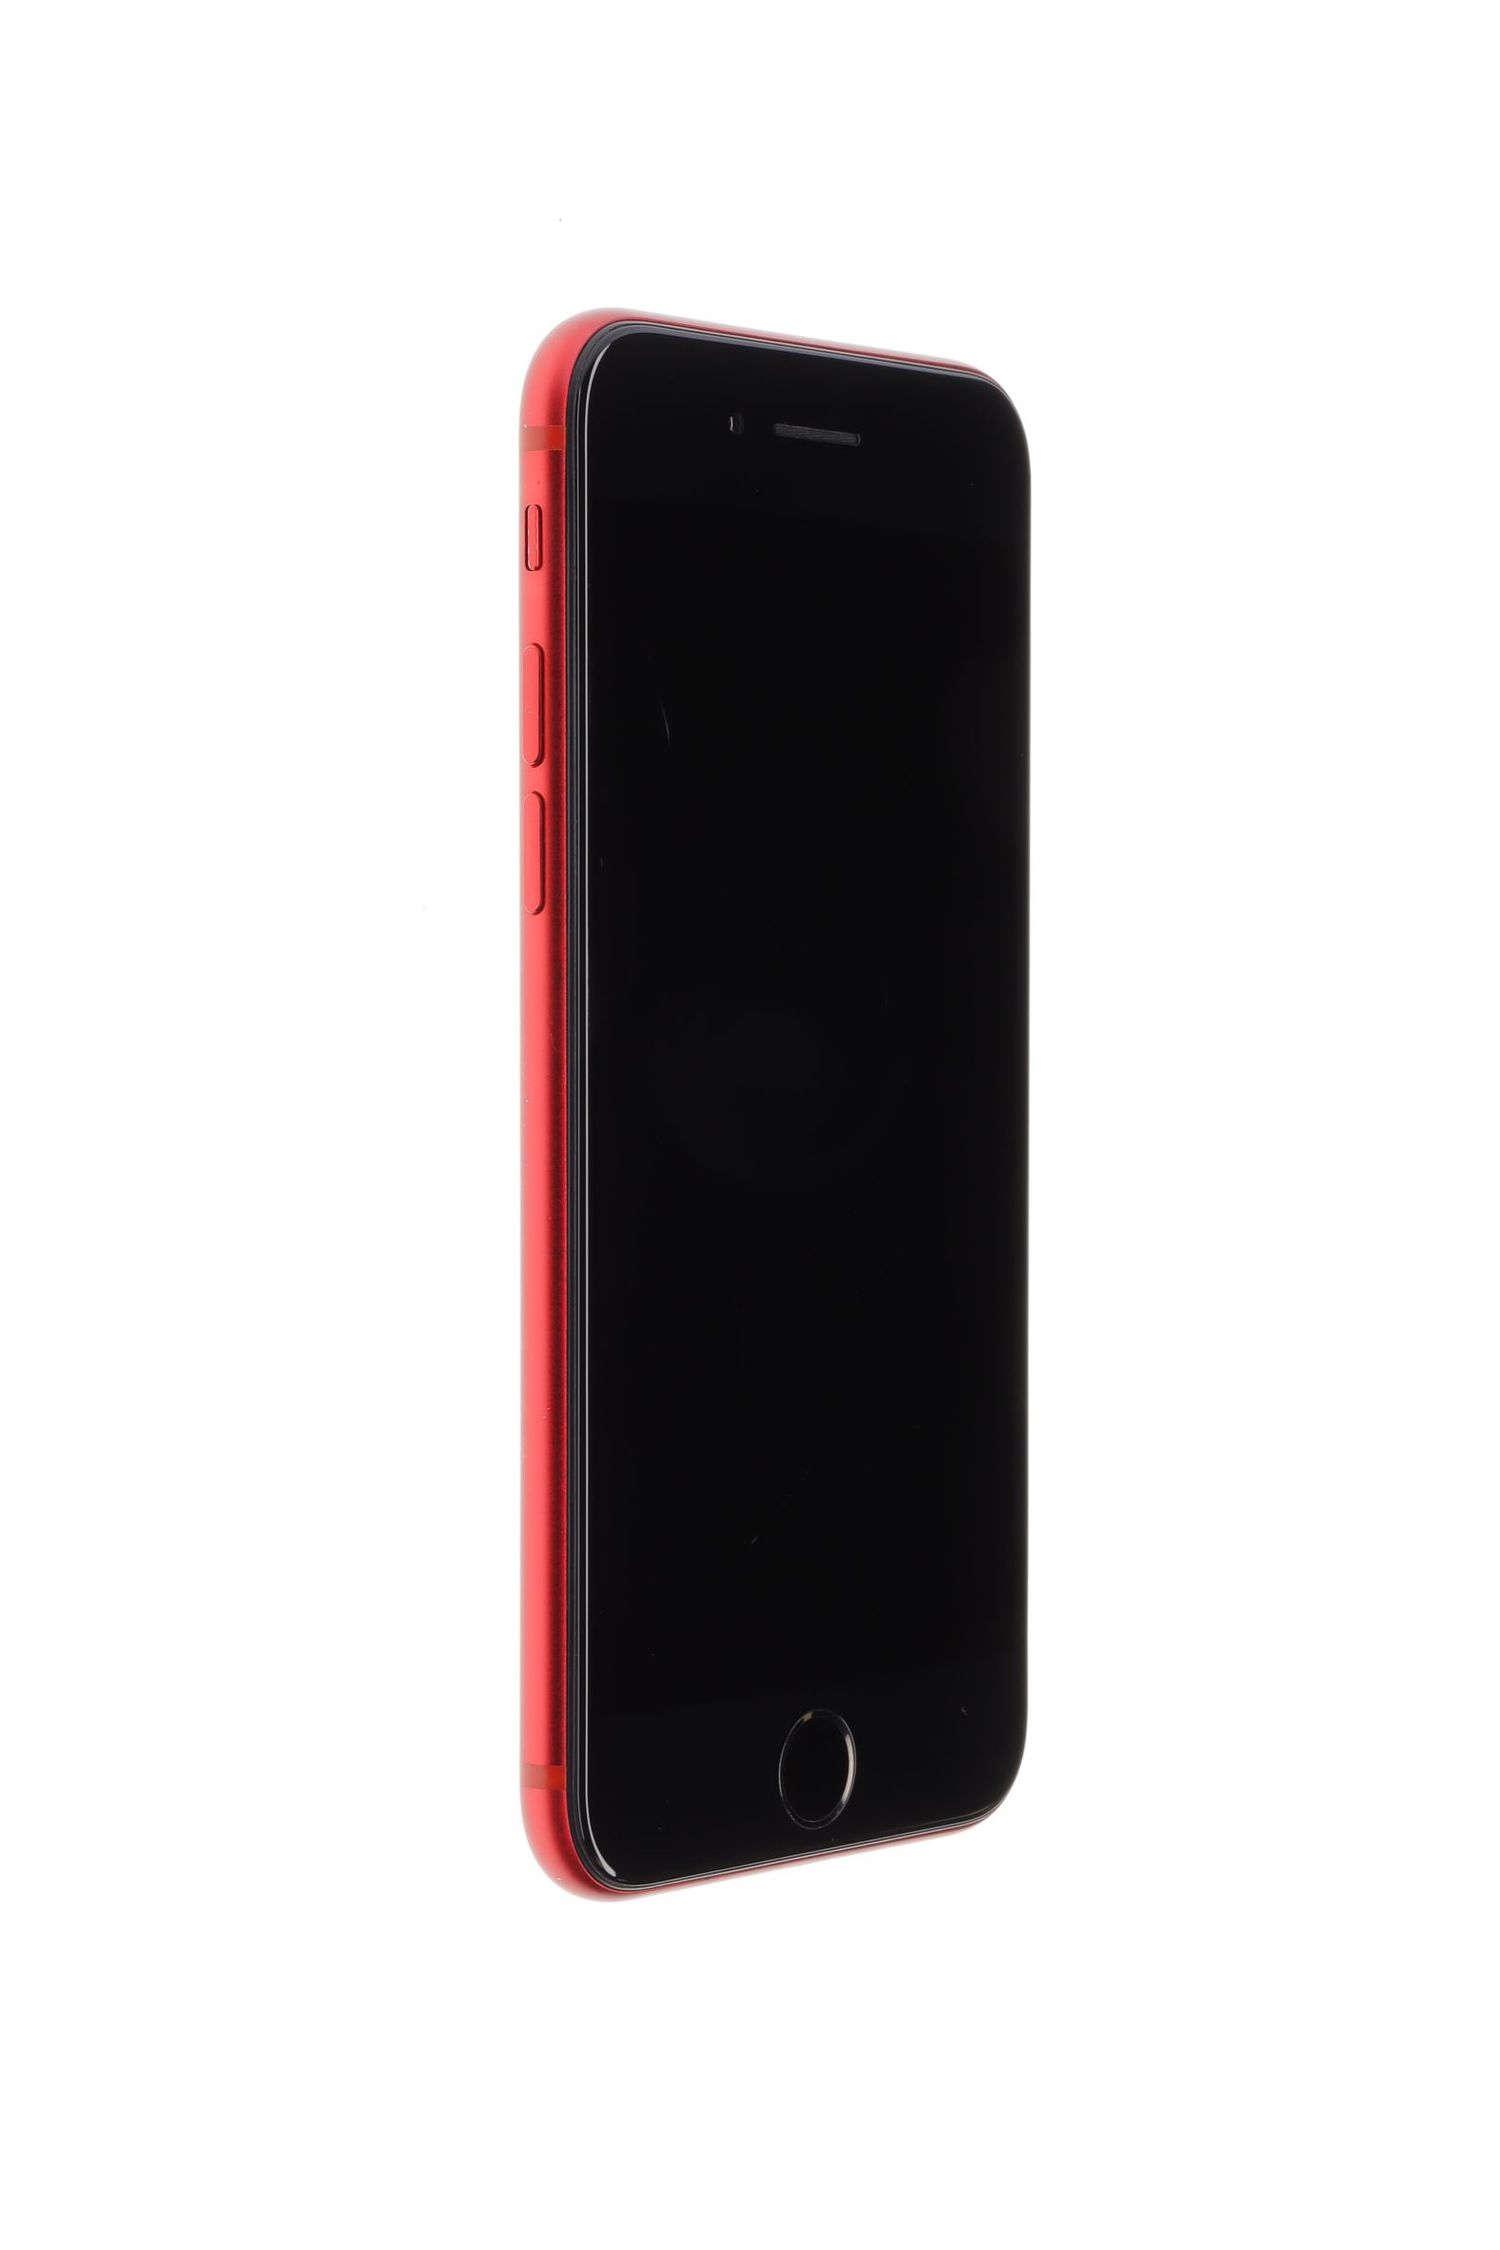 Mobiltelefon Apple iPhone SE 2020, Red, 64 GB, Excelent